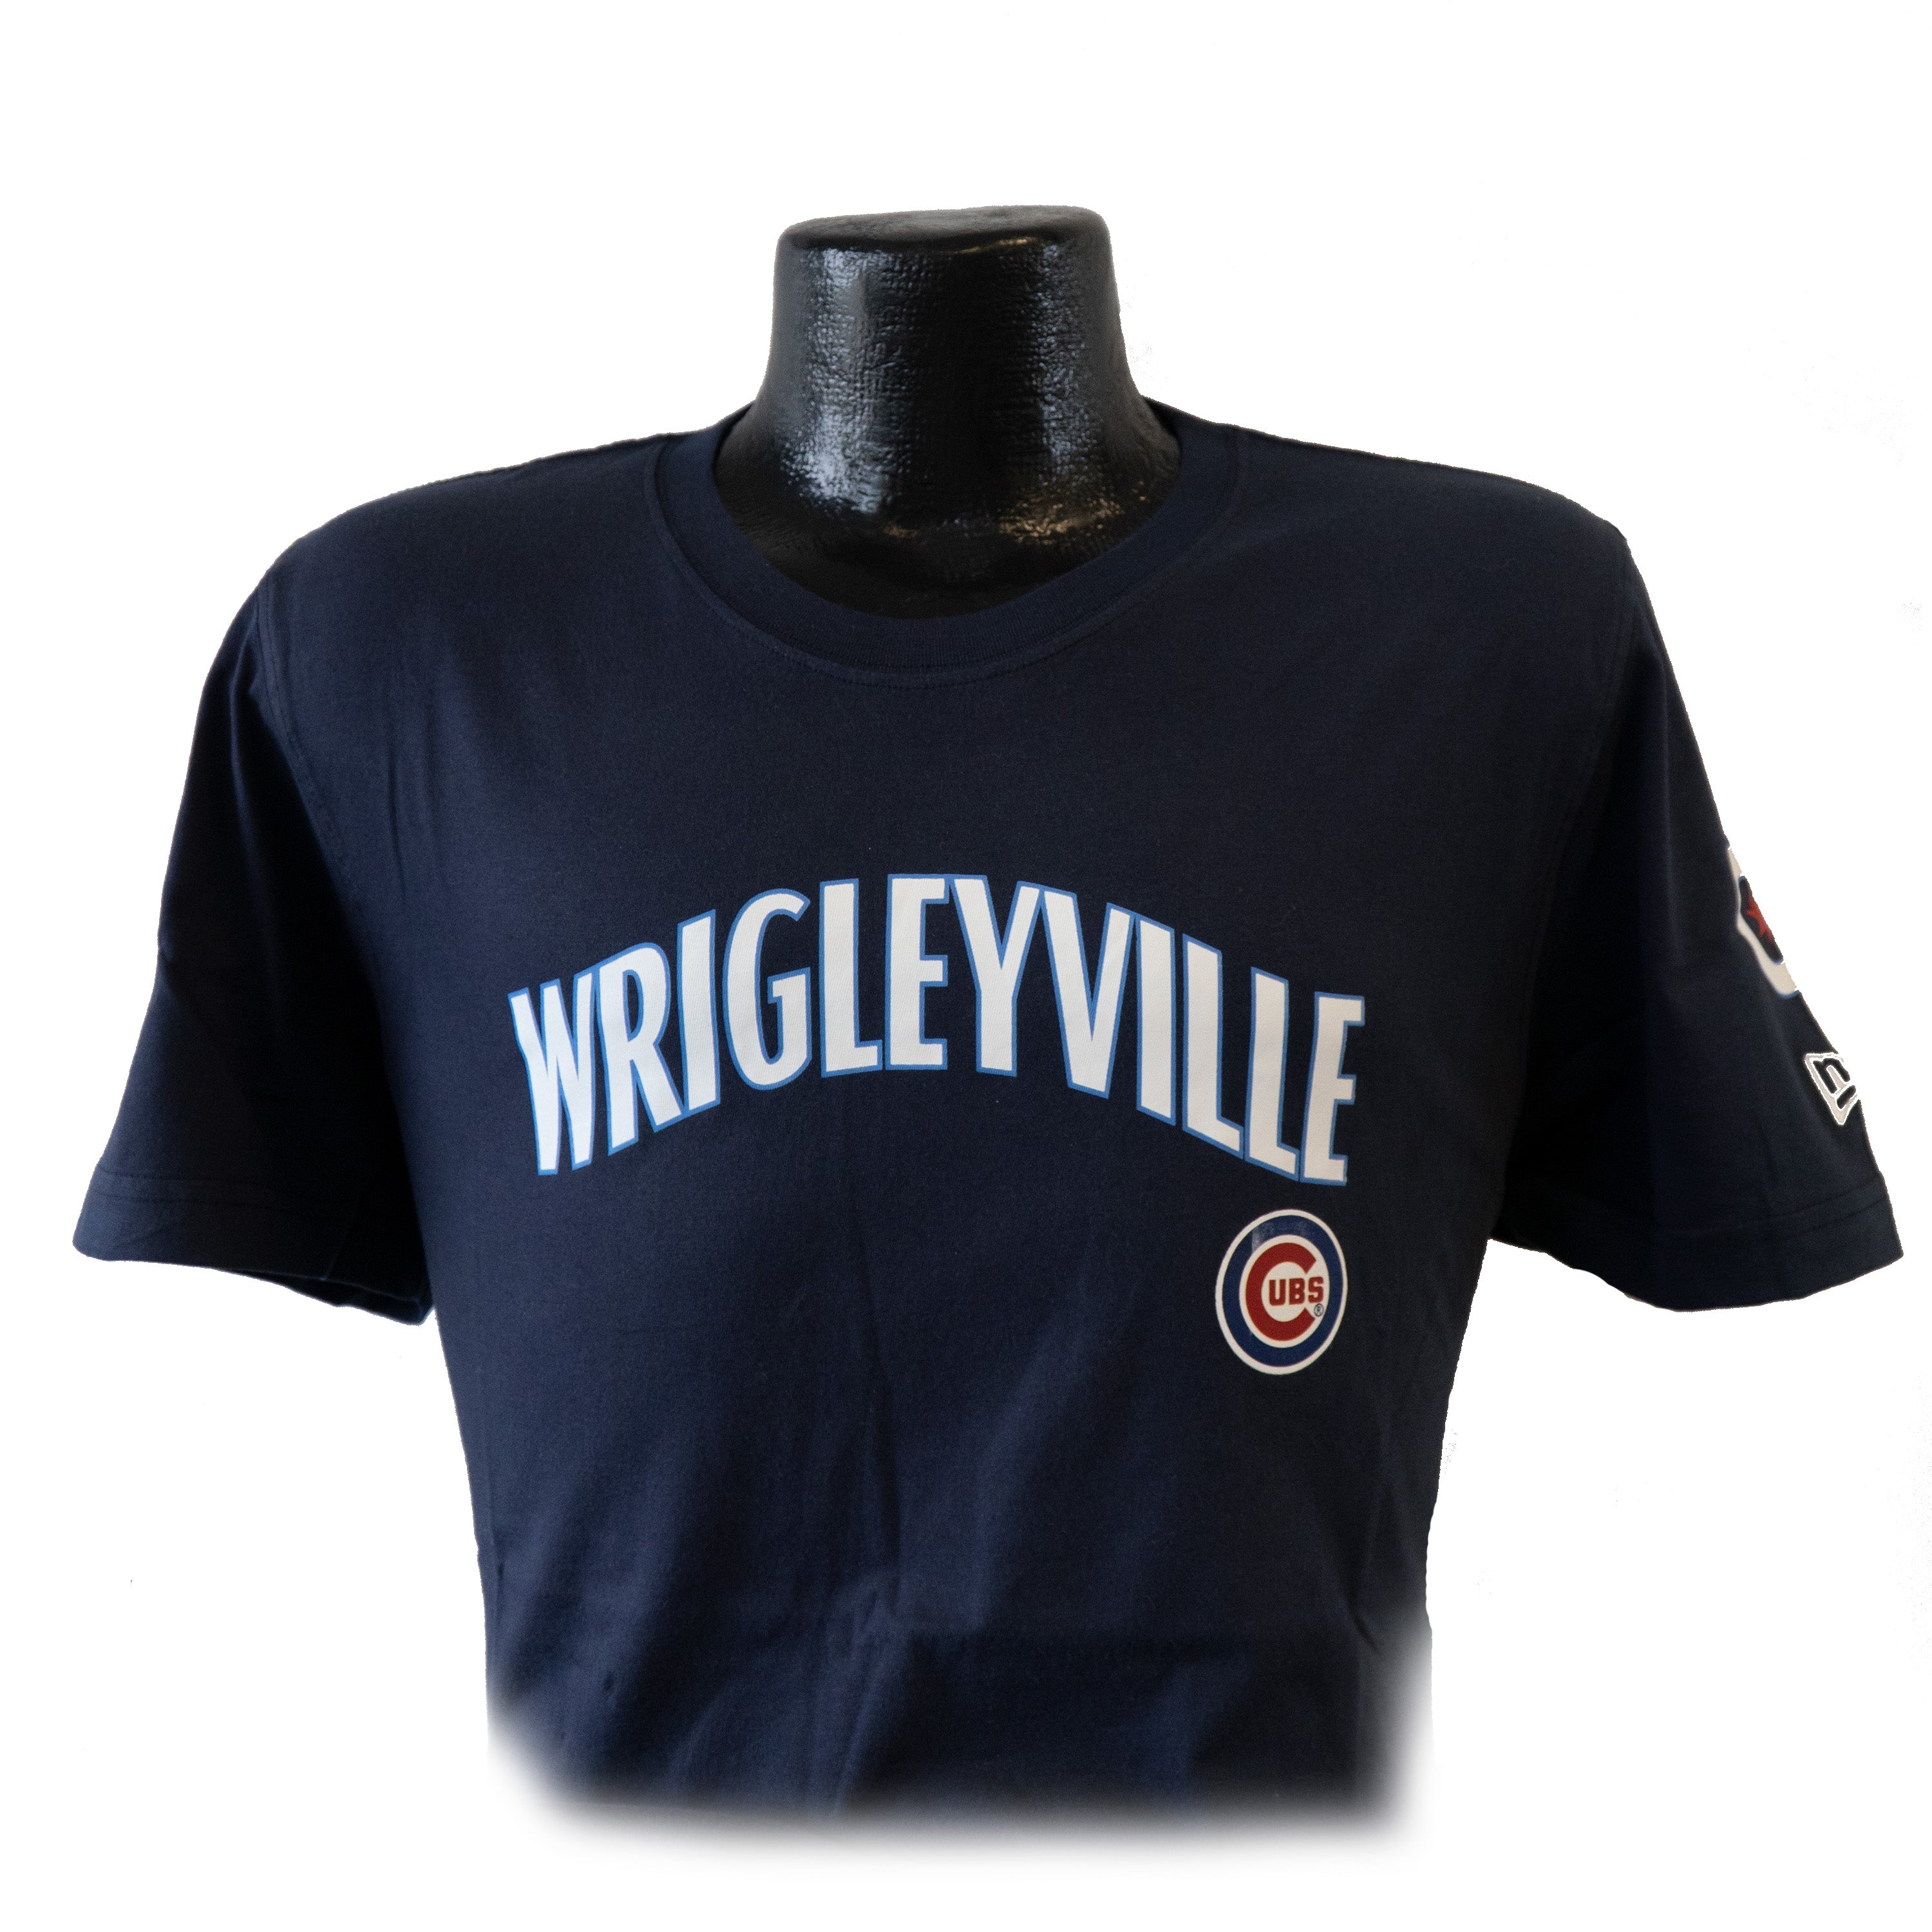 wrigleyville cubs uniform